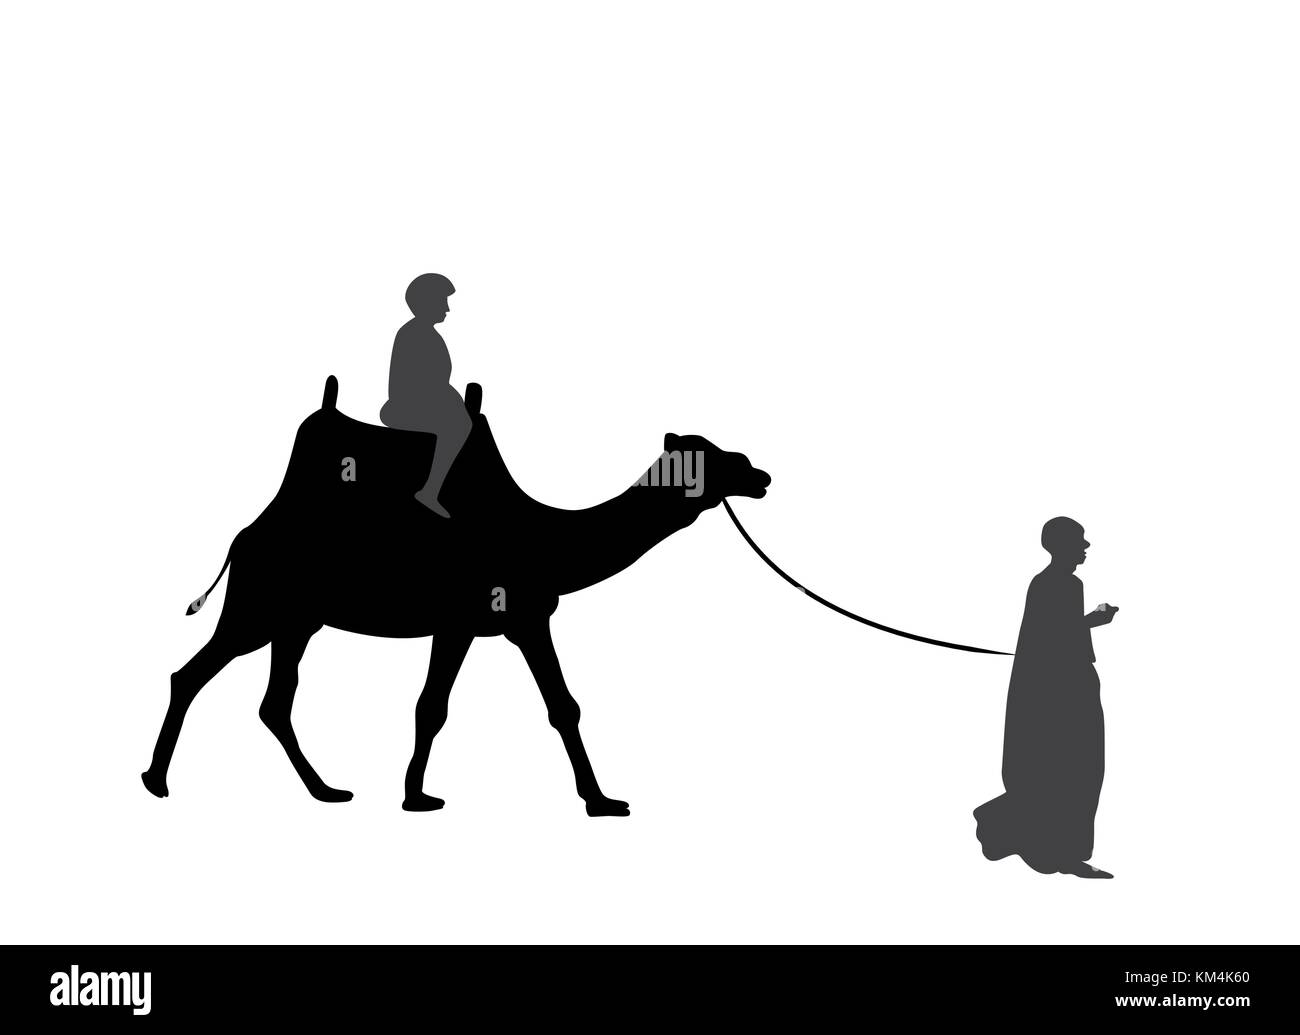 Silhouette en noir et blanc d'un chameau avec un bédouin. vector illustration eps10. Illustration de Vecteur